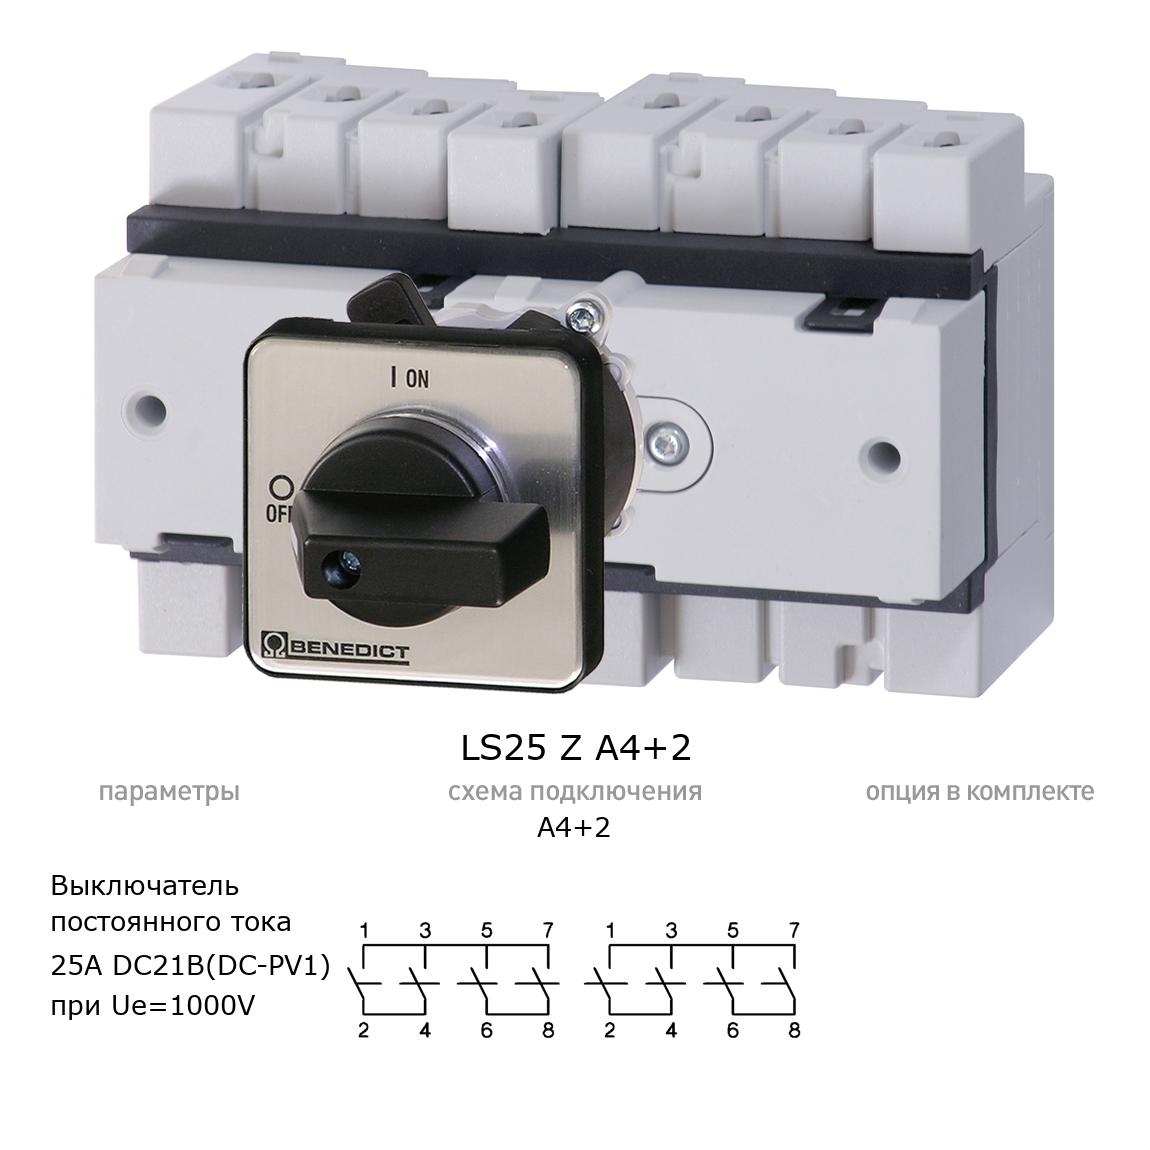 Кулачковый переключатель для постоянного тока (DC) LS25 Z A4+2 BENEDICT